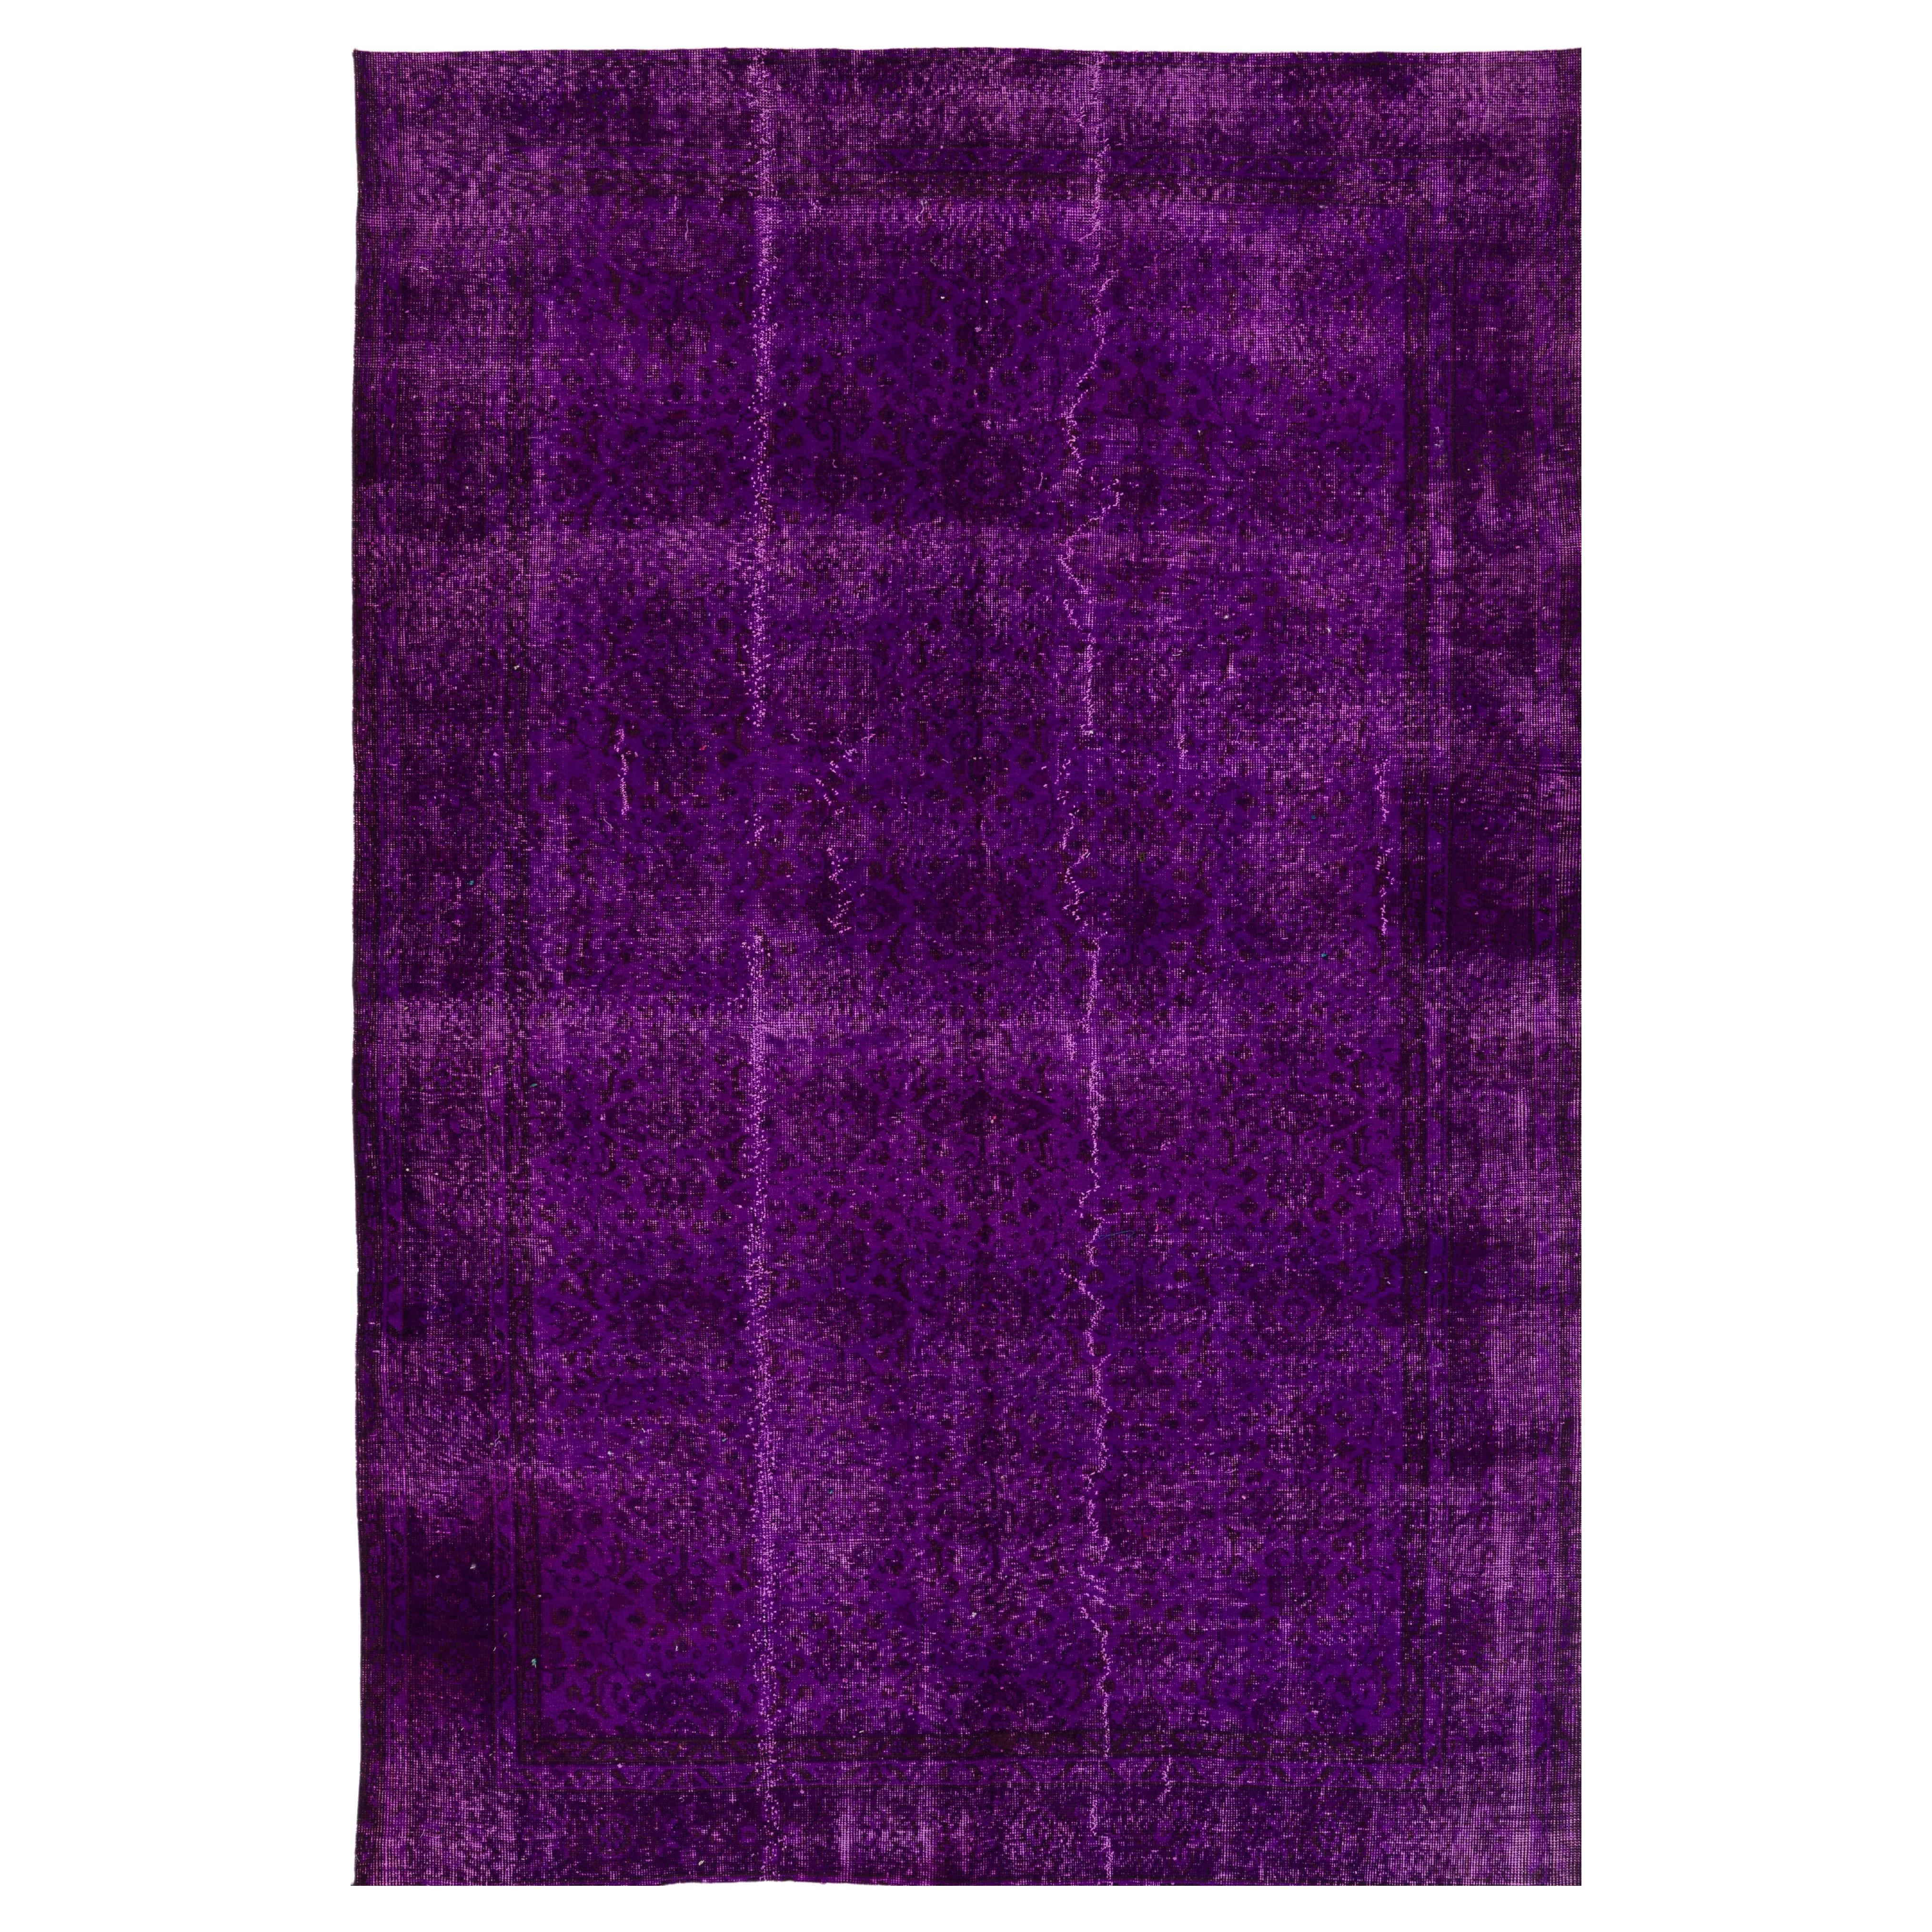 Tapis vintage fait à la main, teinté à la main en violet, idéal pour les intérieurs modernes, 16,51 x 24,61 cm